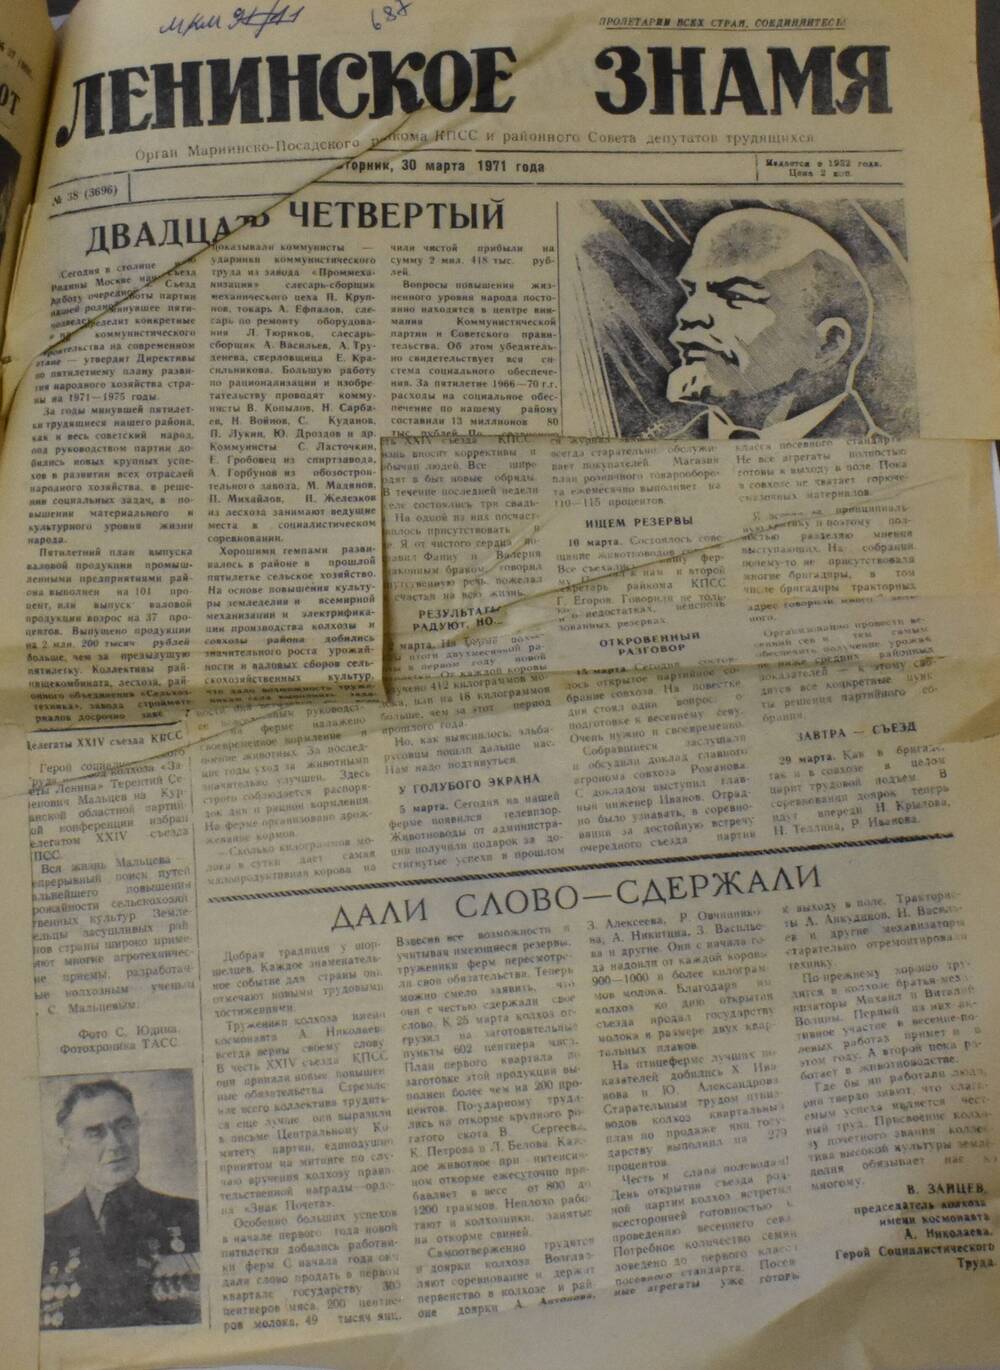 Газета Ленинское знамя № 38 от 30 марта 1971